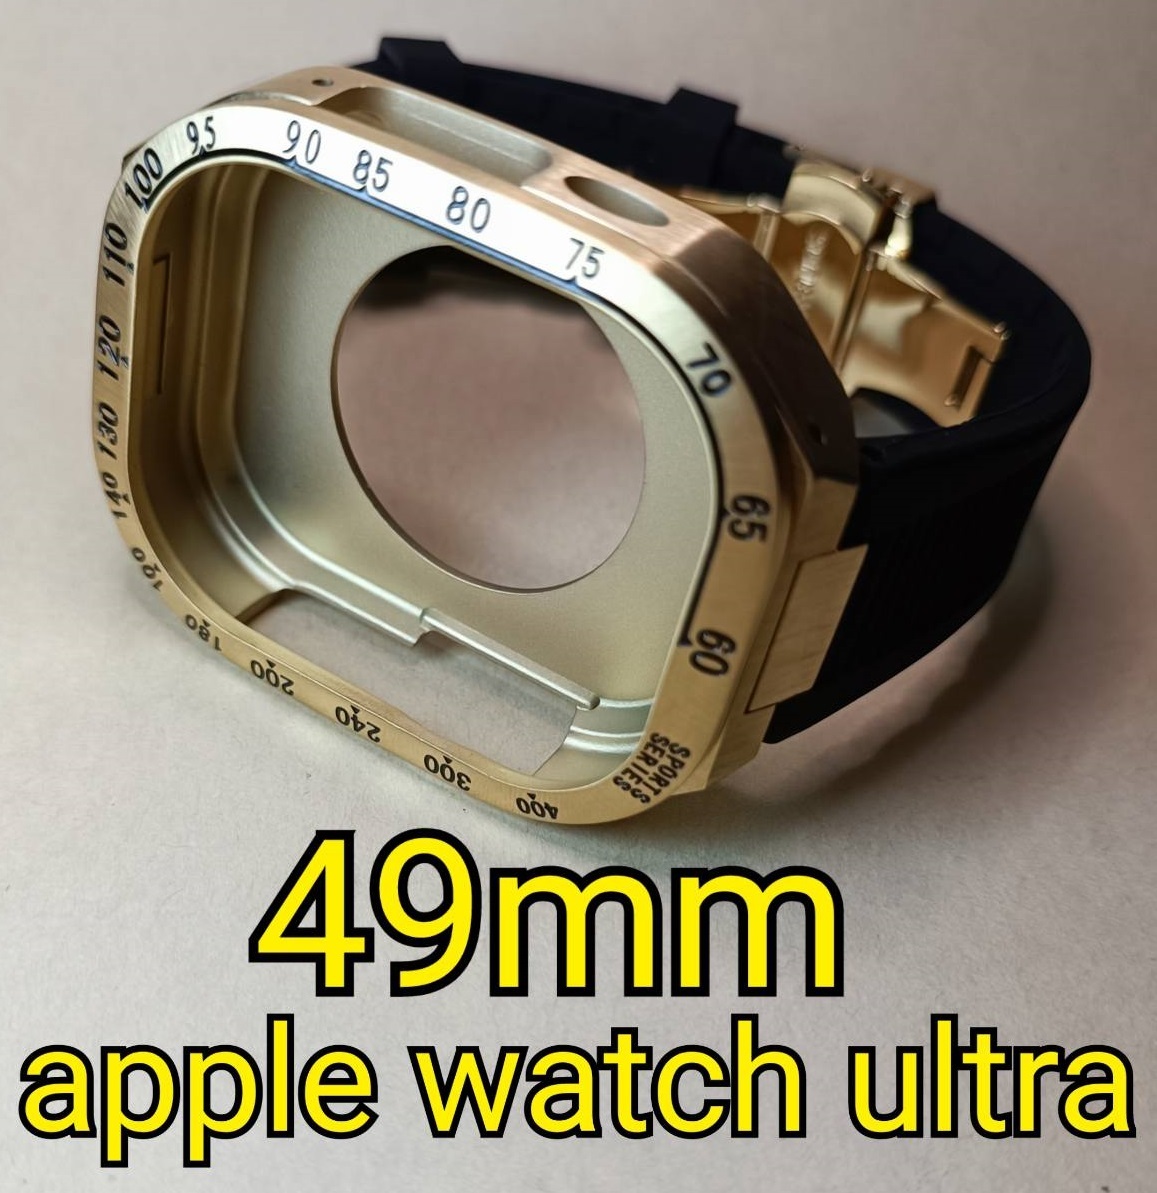 金 49mm apple watch ultra アップルウォッチウルトラ ケース ダイバー メタル ステンレス カスタム golden concept ゴールデンコンセプト